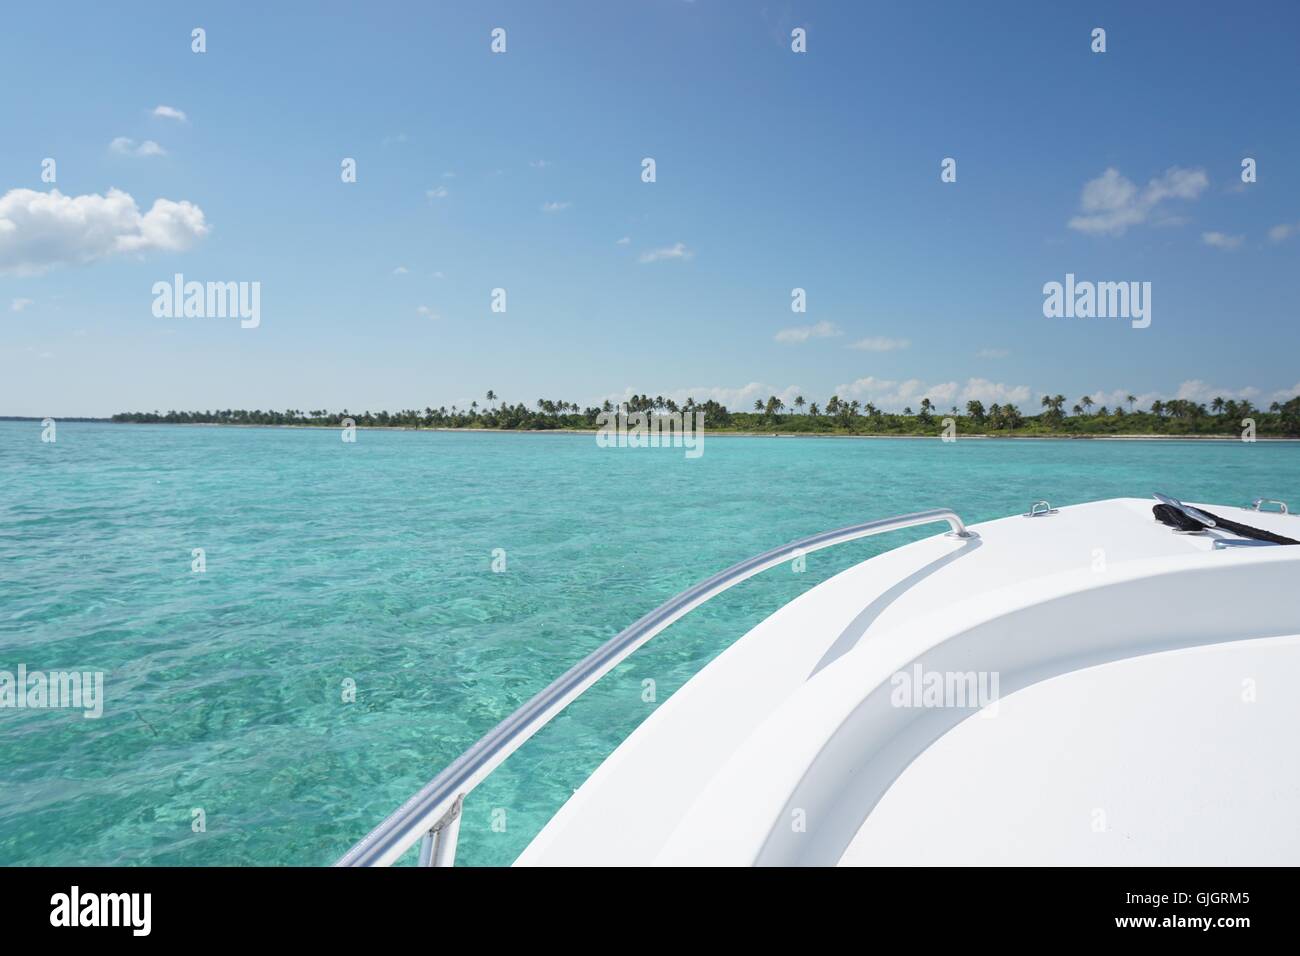 Bateau dans les Caraïbes - vue partielle d'un bateau blanc dans les Caraïbes. Avec de l'eau turquoise et bleu ciel. Format horizontal. Banque D'Images